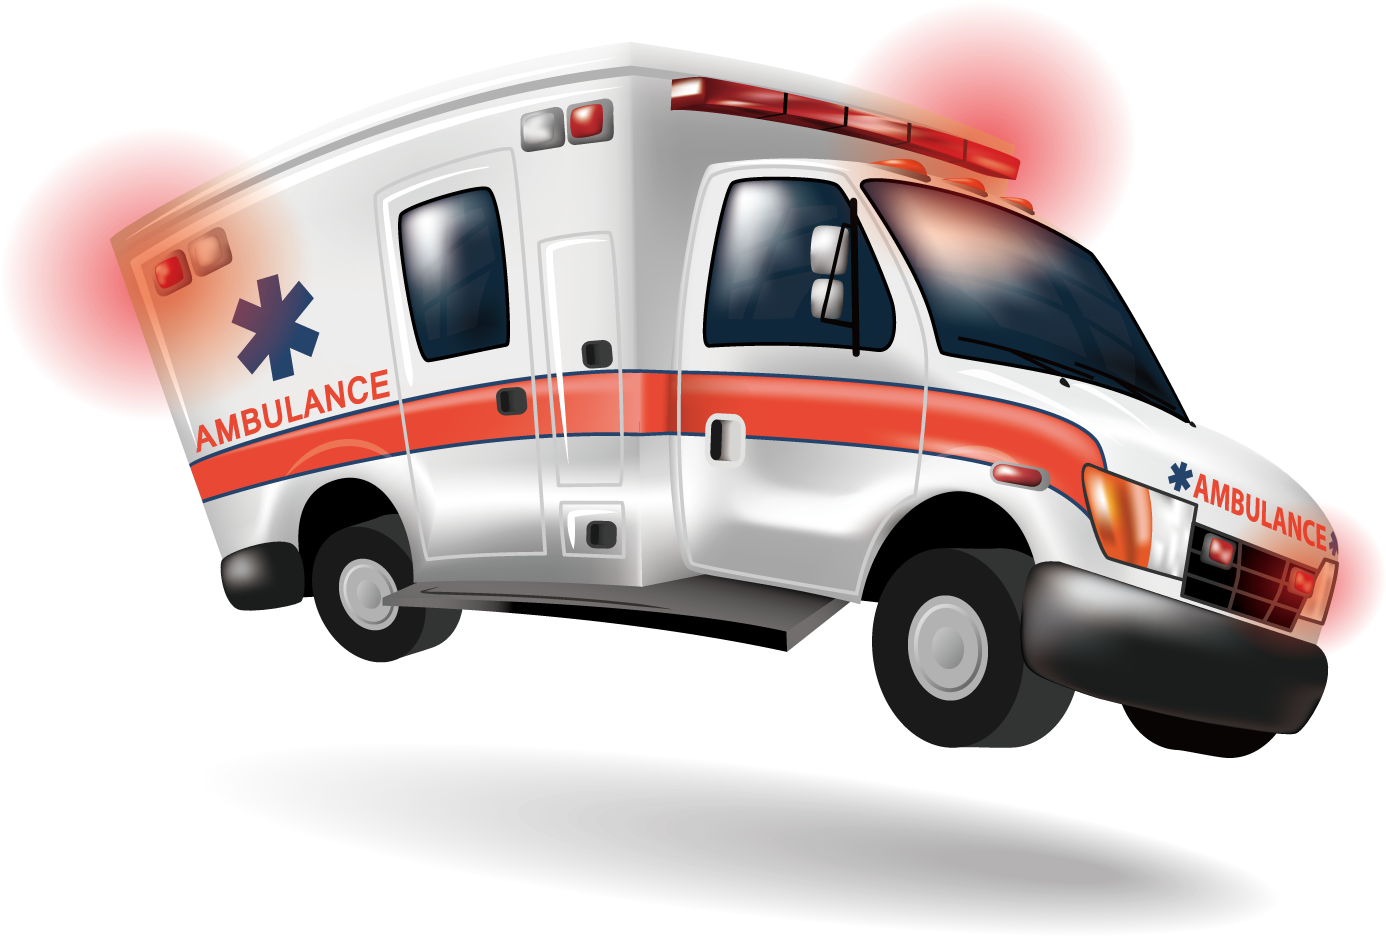 Emergency Ambulance Vehicle Illustration PNG image